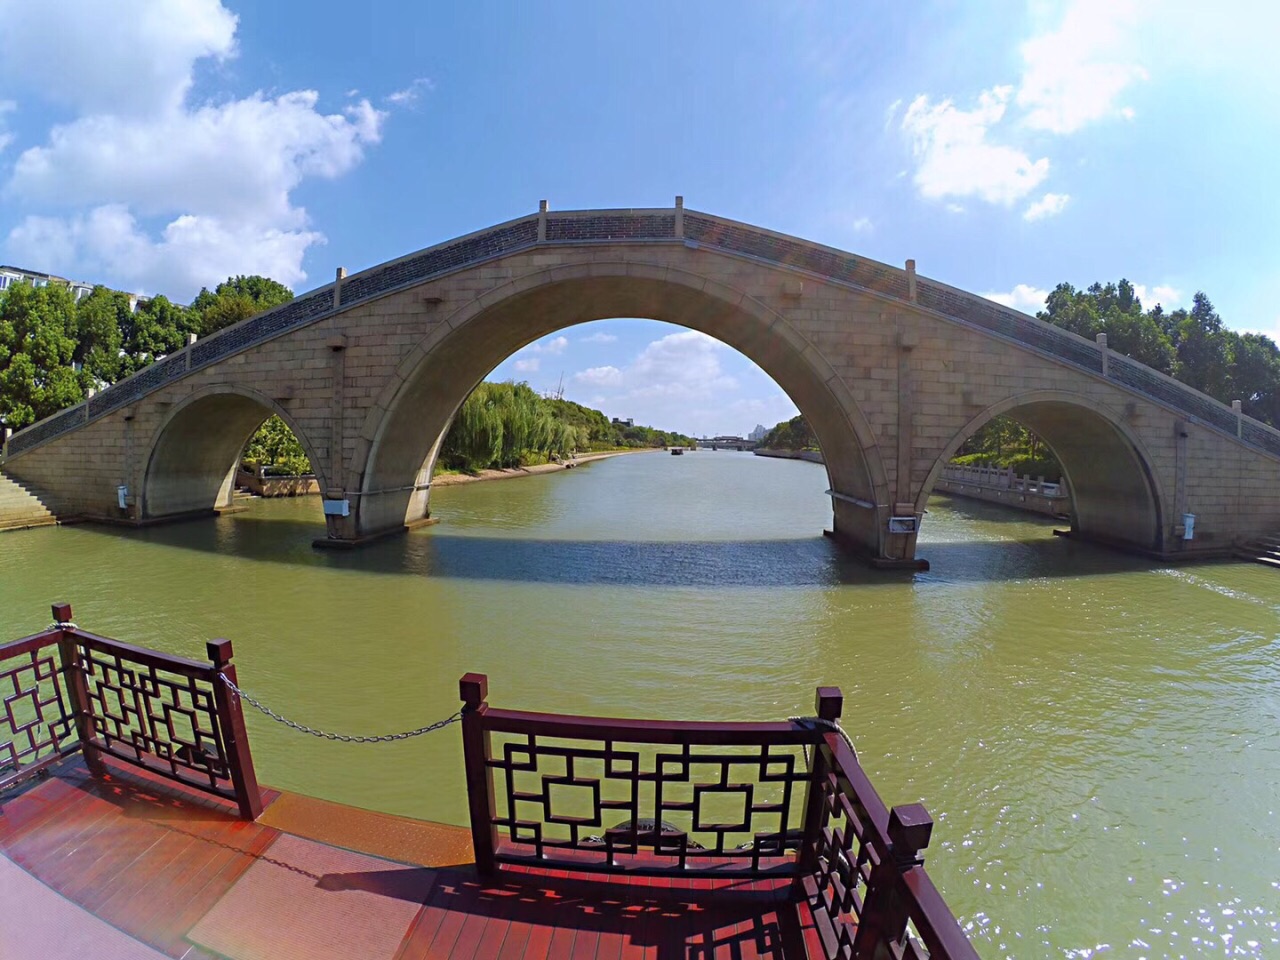 【携程攻略】苏州三步二桥景点,三步二桥俗称双桥，是甪直古镇的一大重要标志。甪直是中国著名的桥乡…